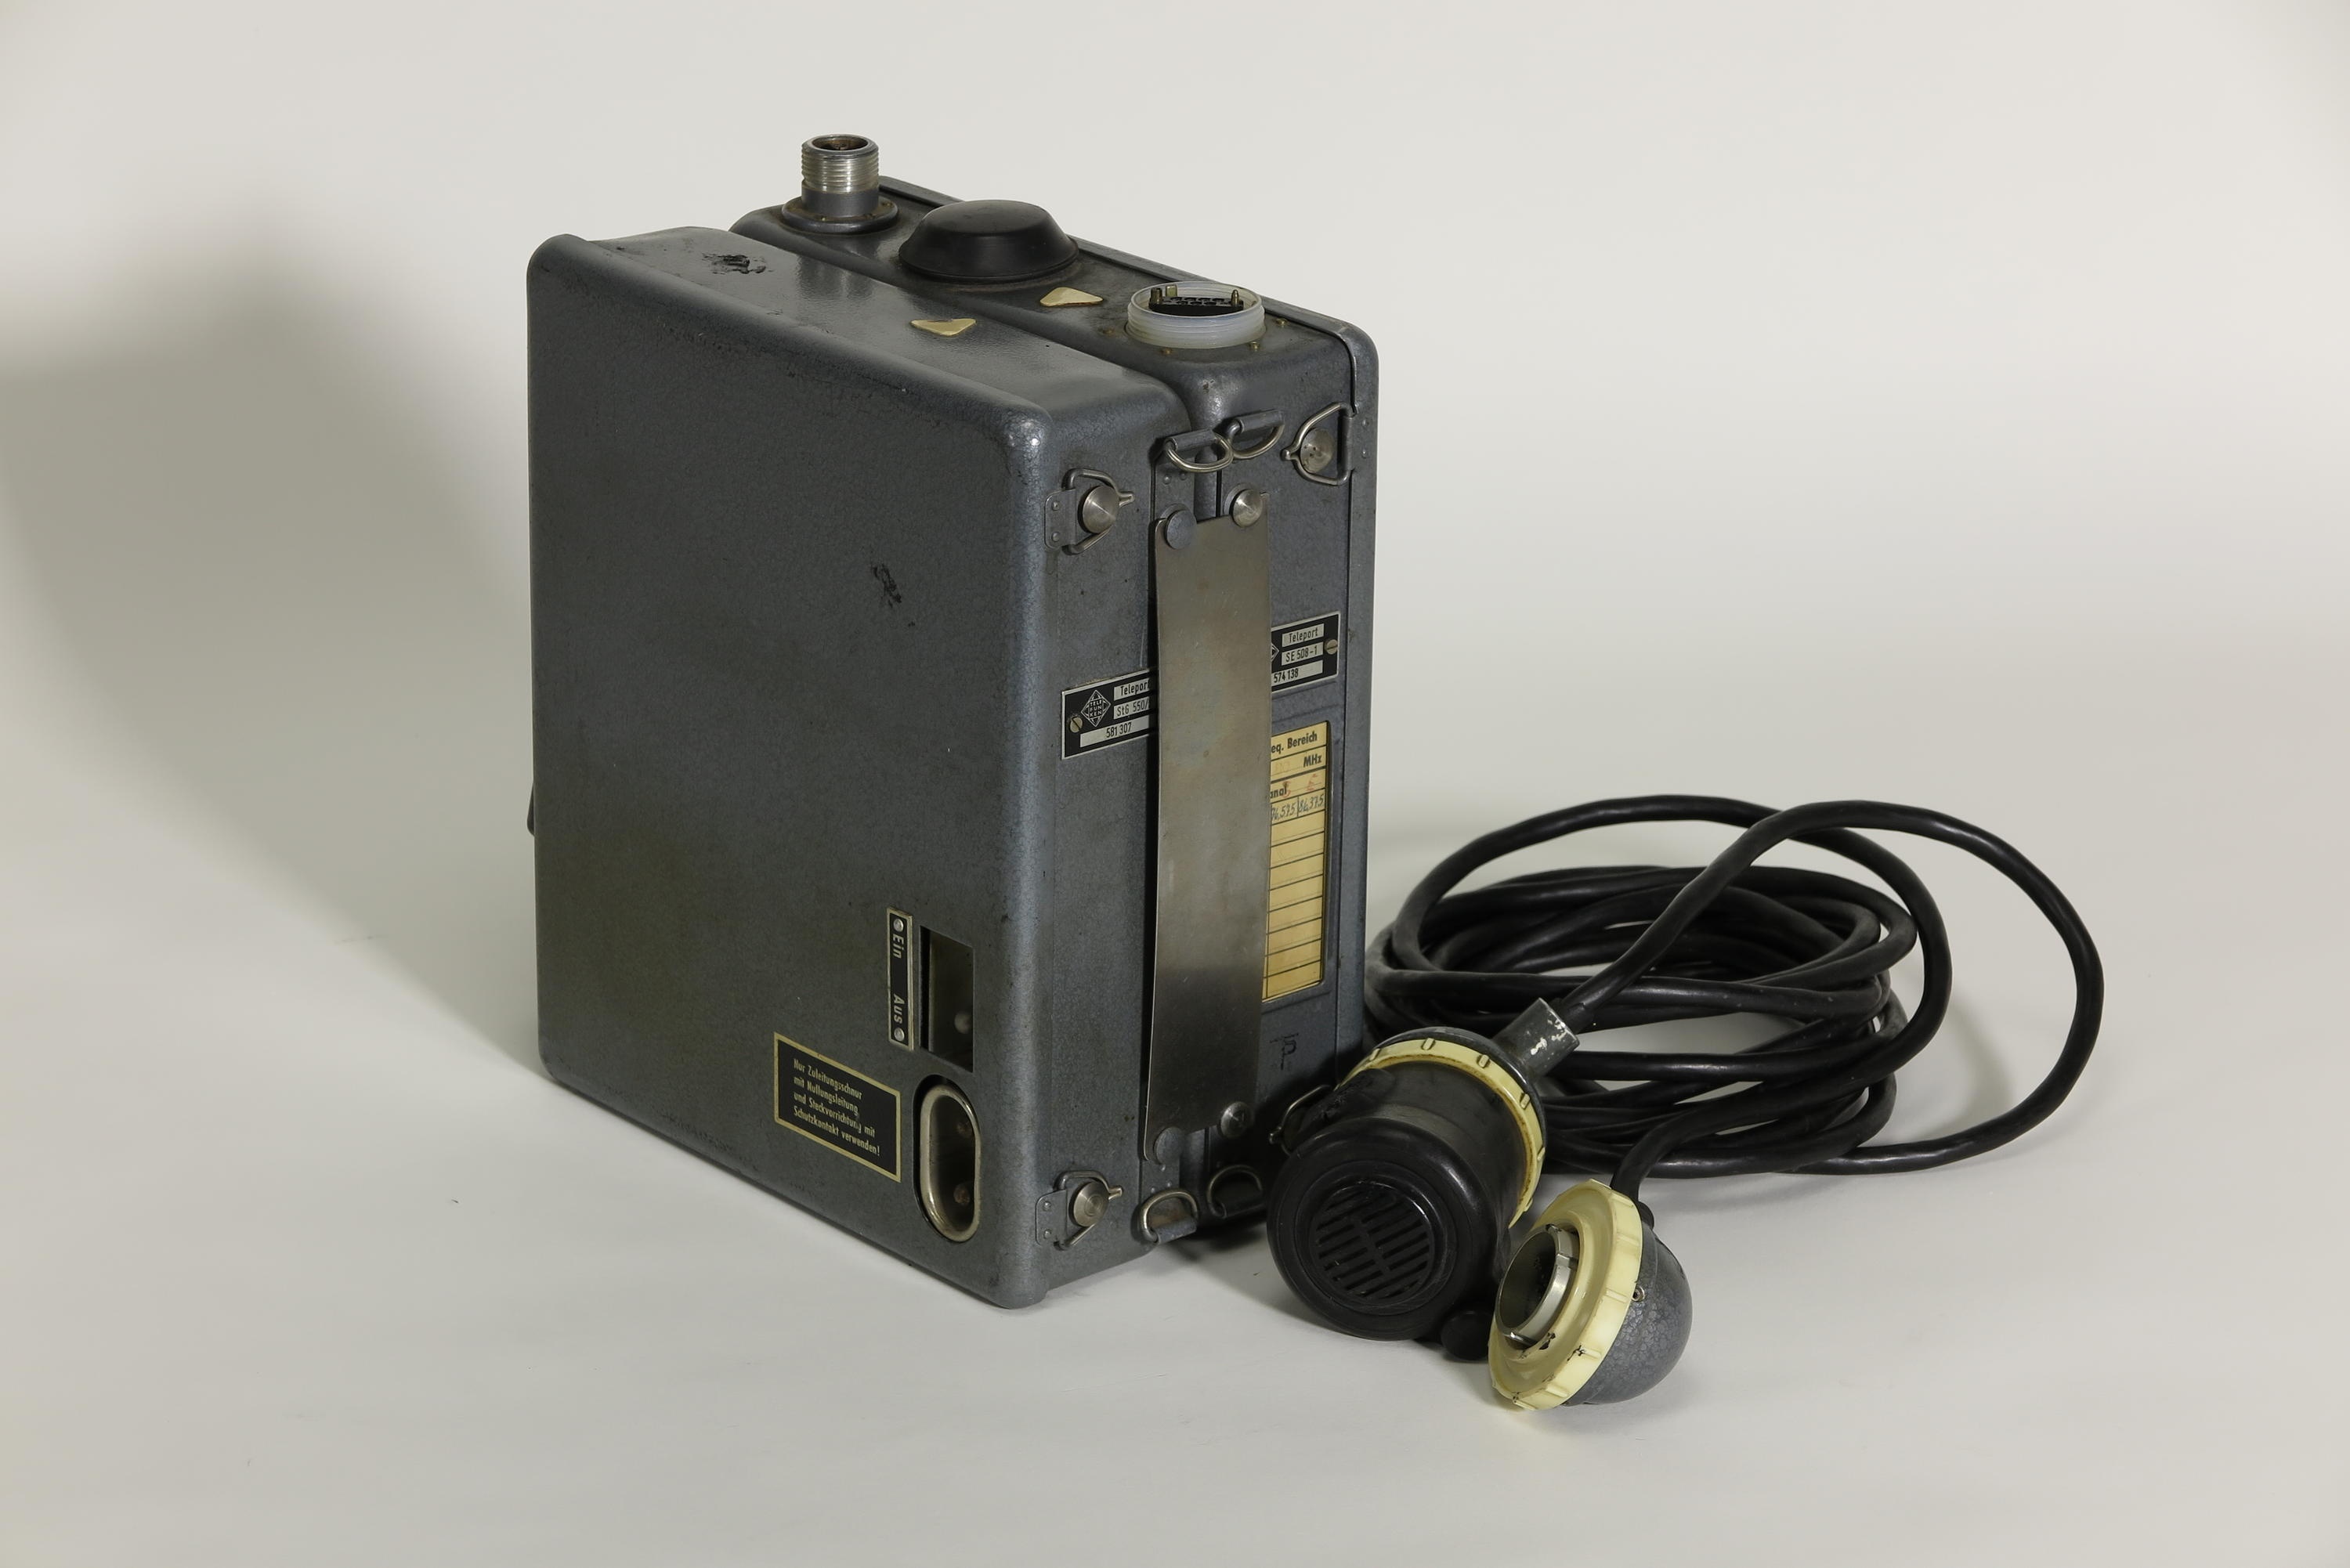 UKW-Sende-Empfangsgerät Telefunken Teleport SE 508-1 mit Stromwandler Telefunken StG 550/2 (Deutsches Technikmuseum CC BY)